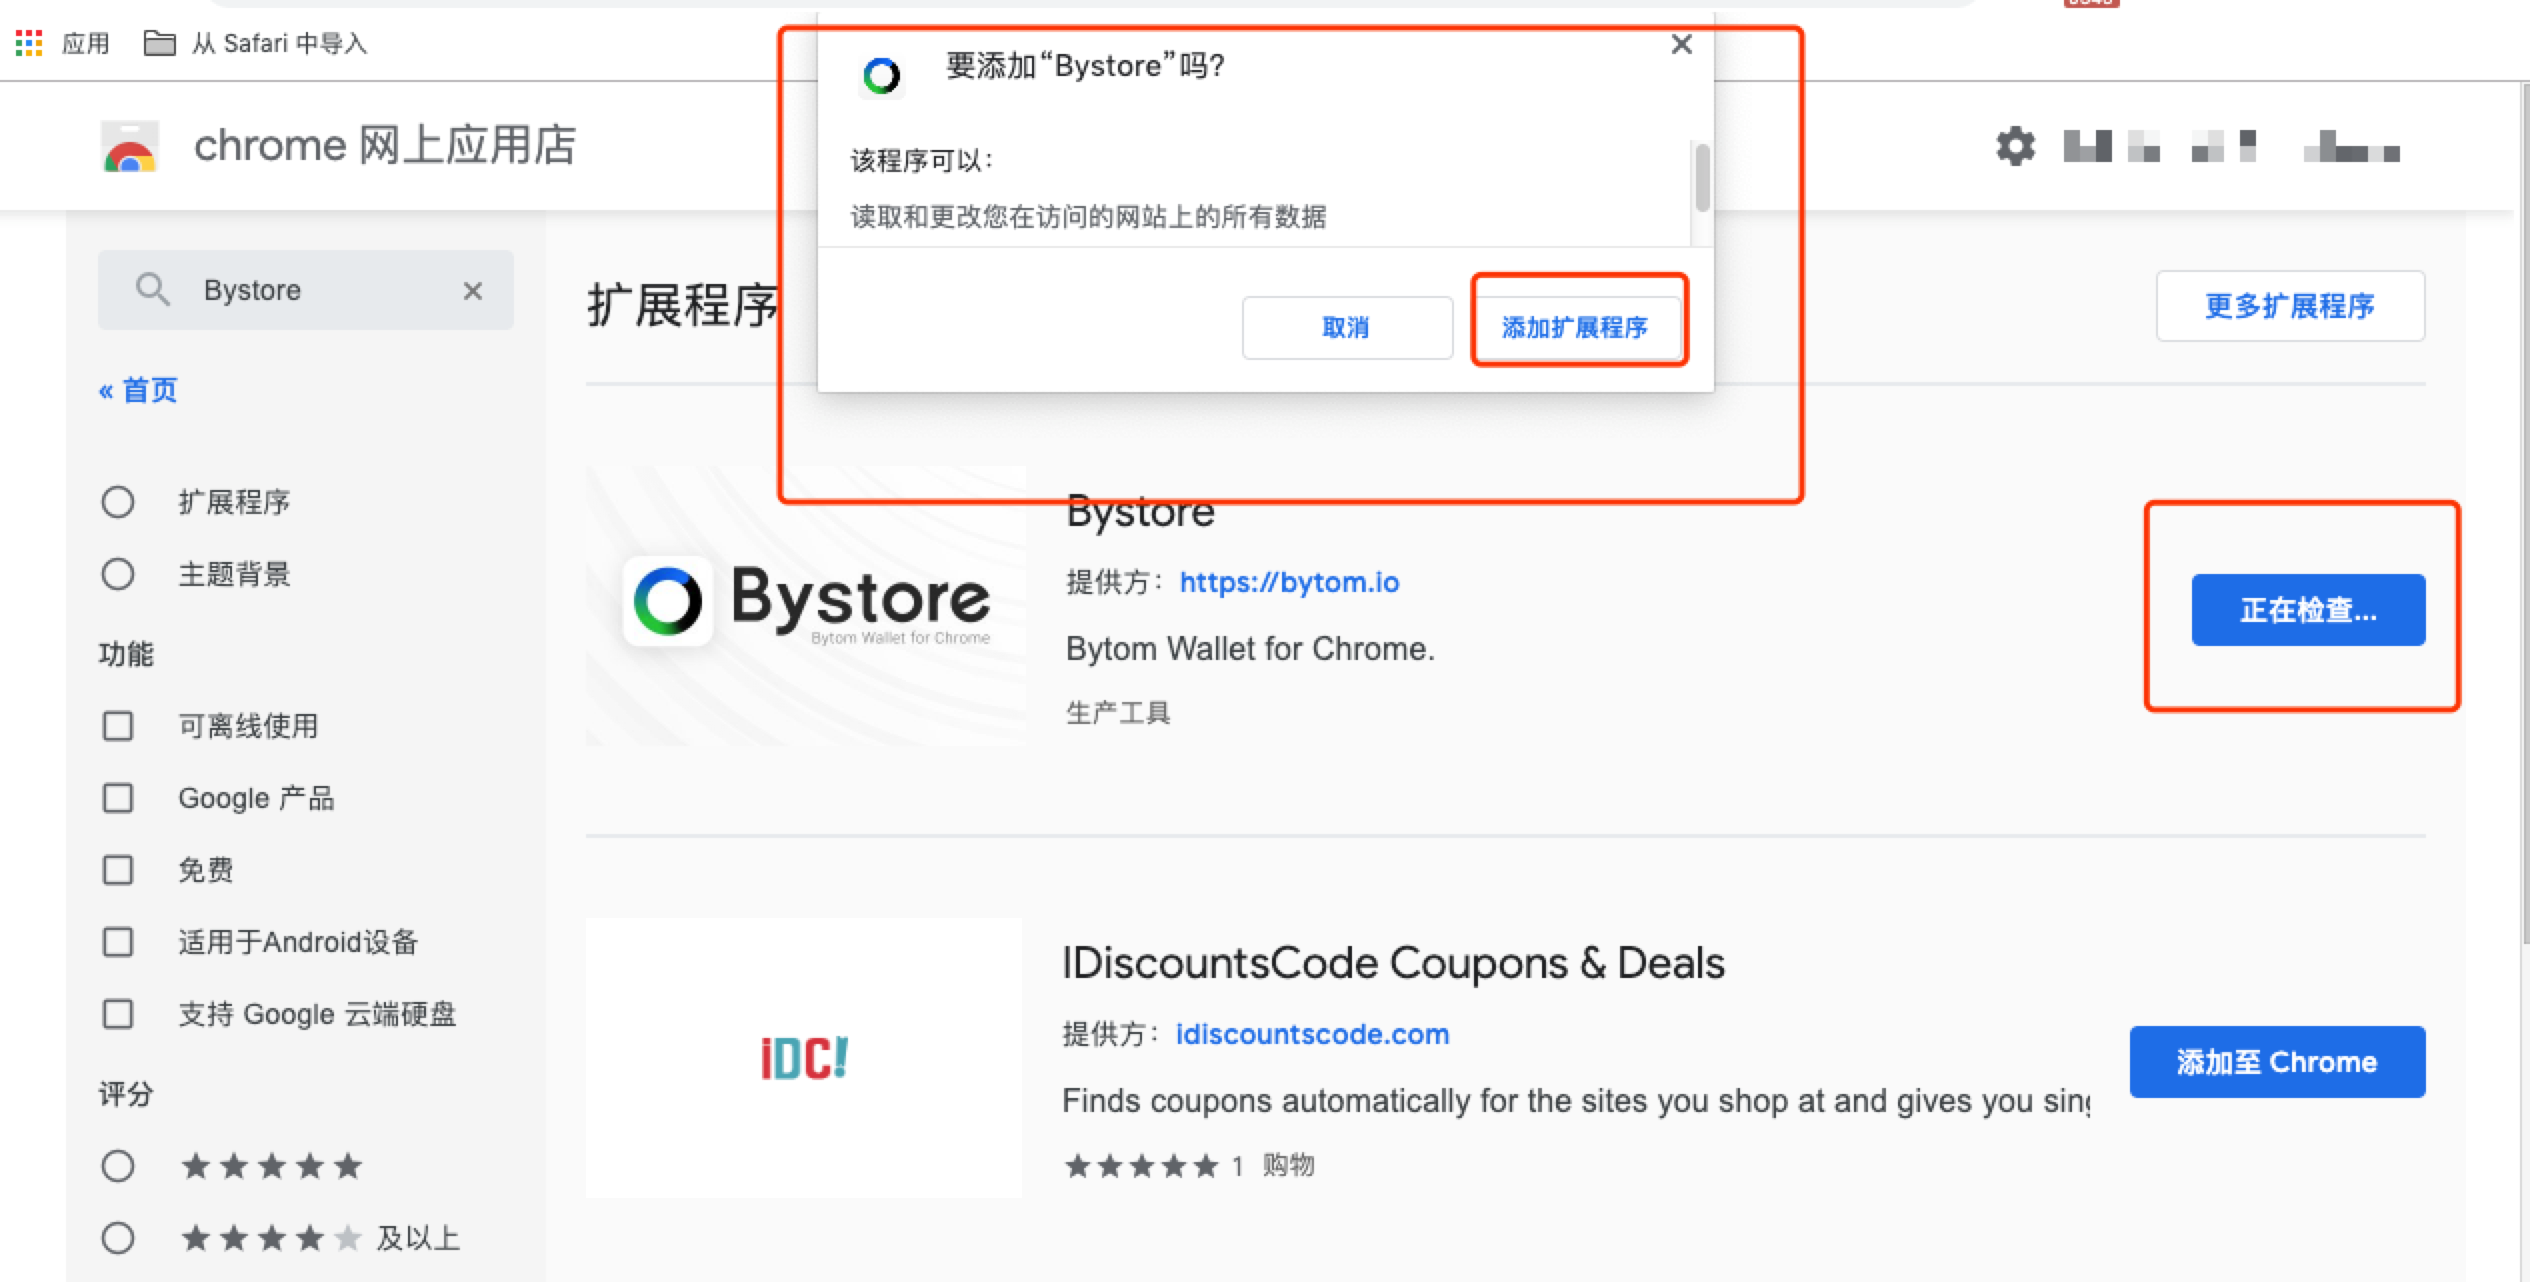 怎么调用Bytom Chrome插件钱包开发Dapp